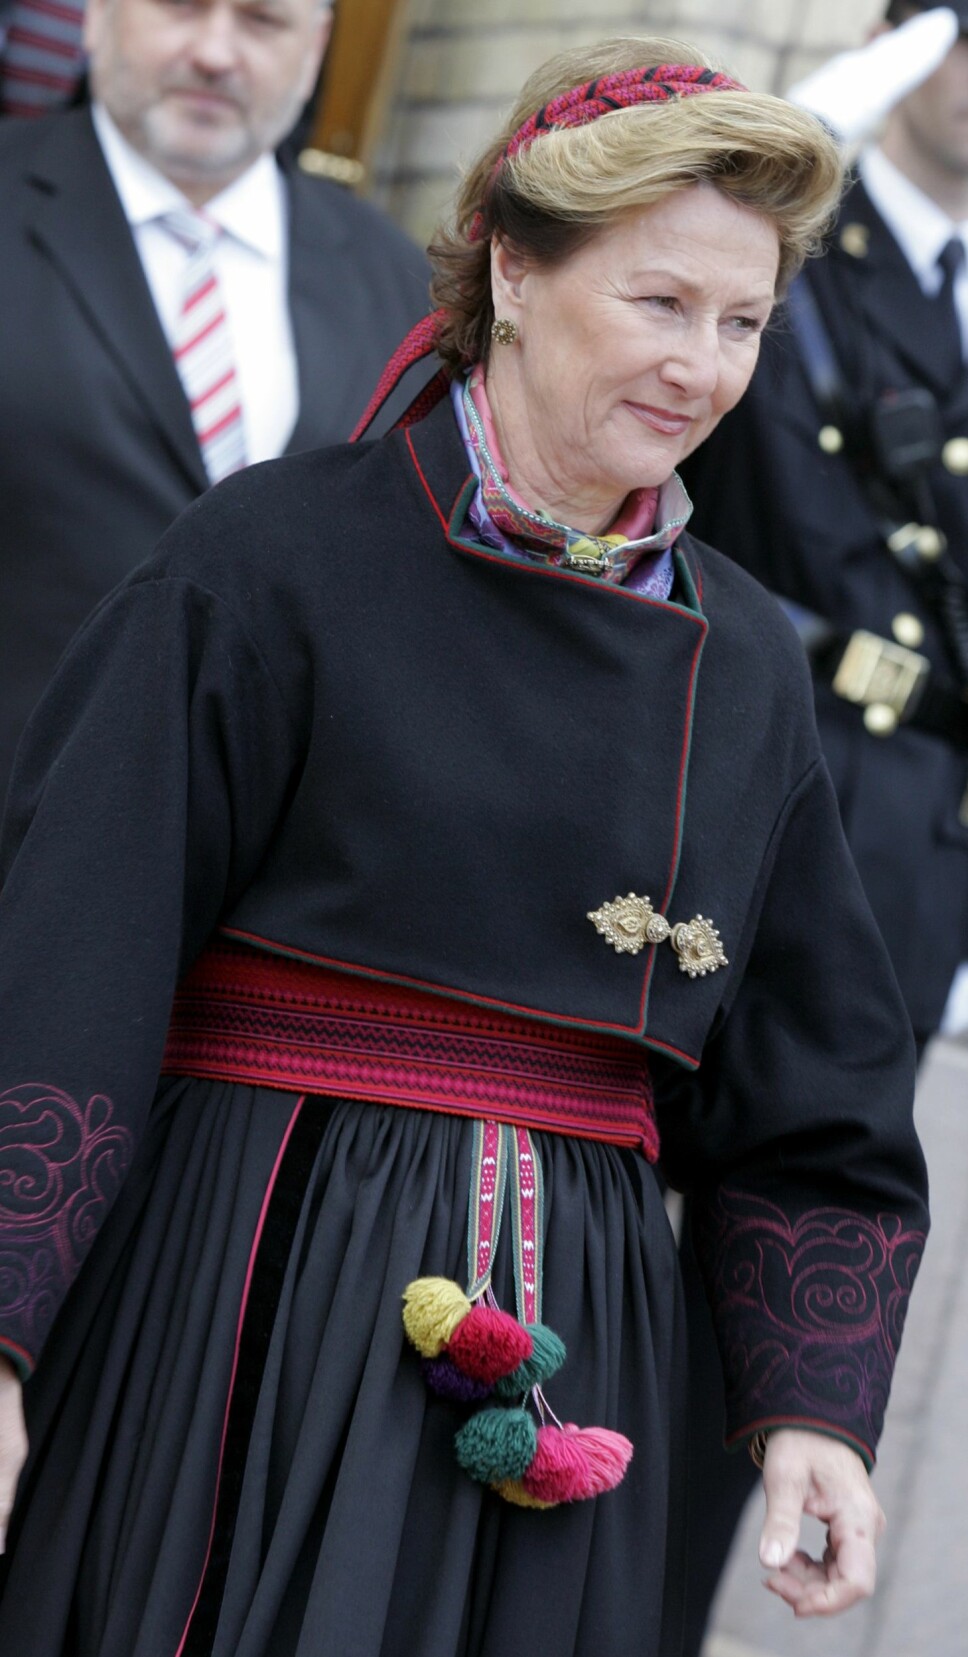 BELTESTAKK: Siden Beltestakken 
kommer fra Telemark, er det en bunad dronning Sonja liker å iføre seg.